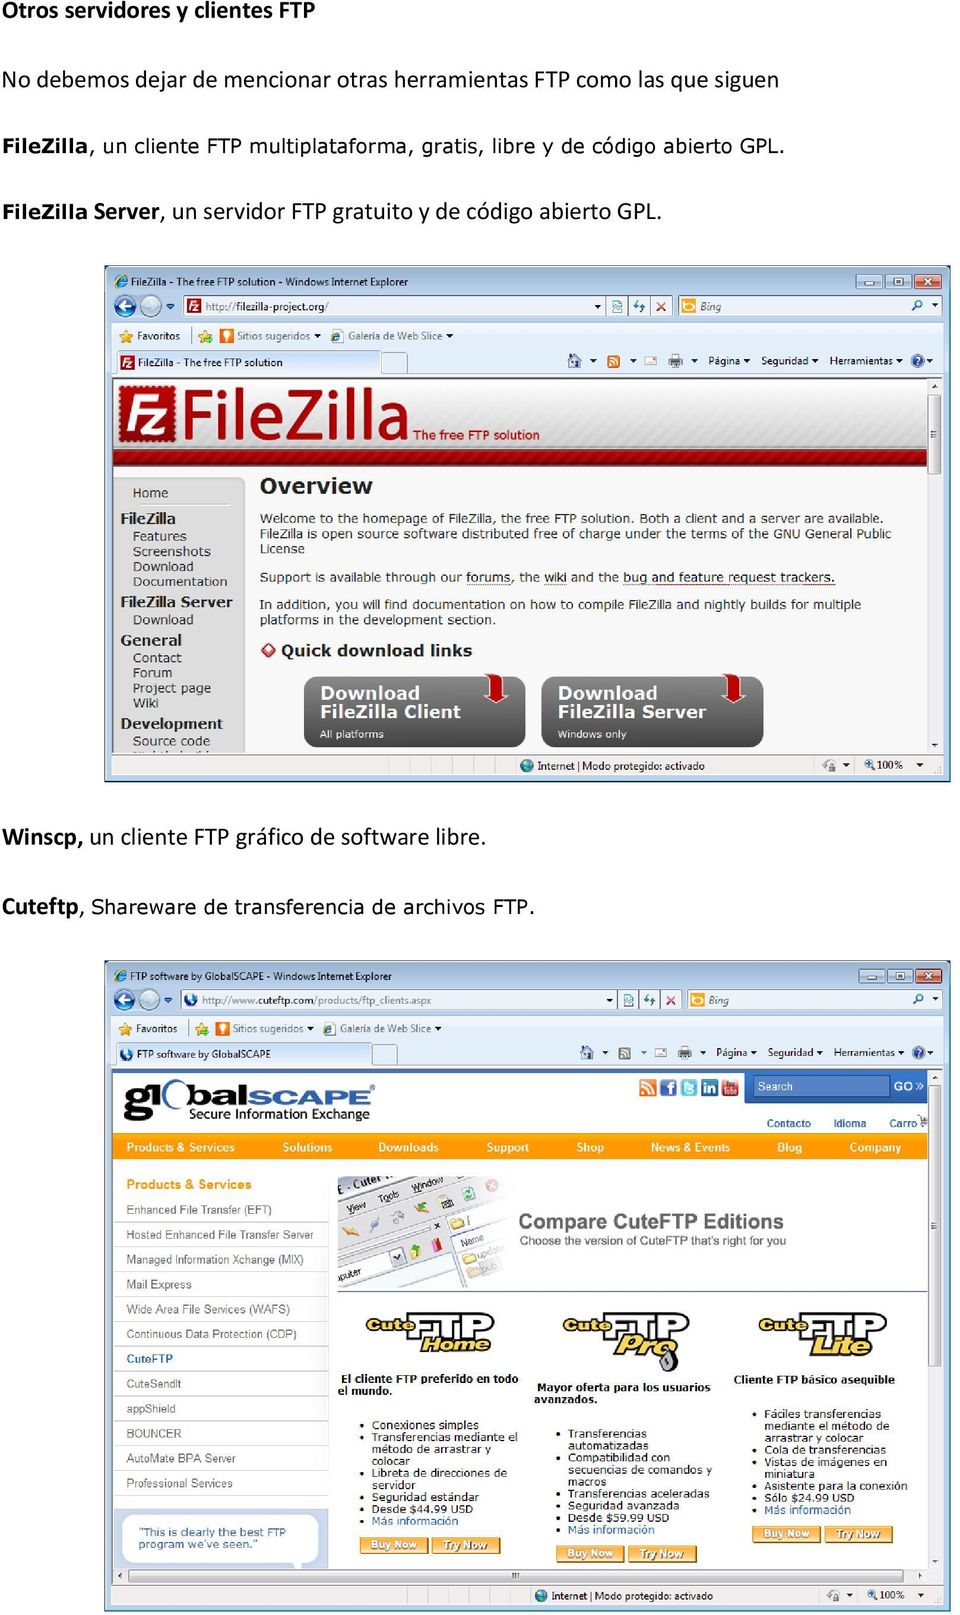 abierto GPL. FileZilla Server, un servidor FTP gratuito y de código abierto GPL.